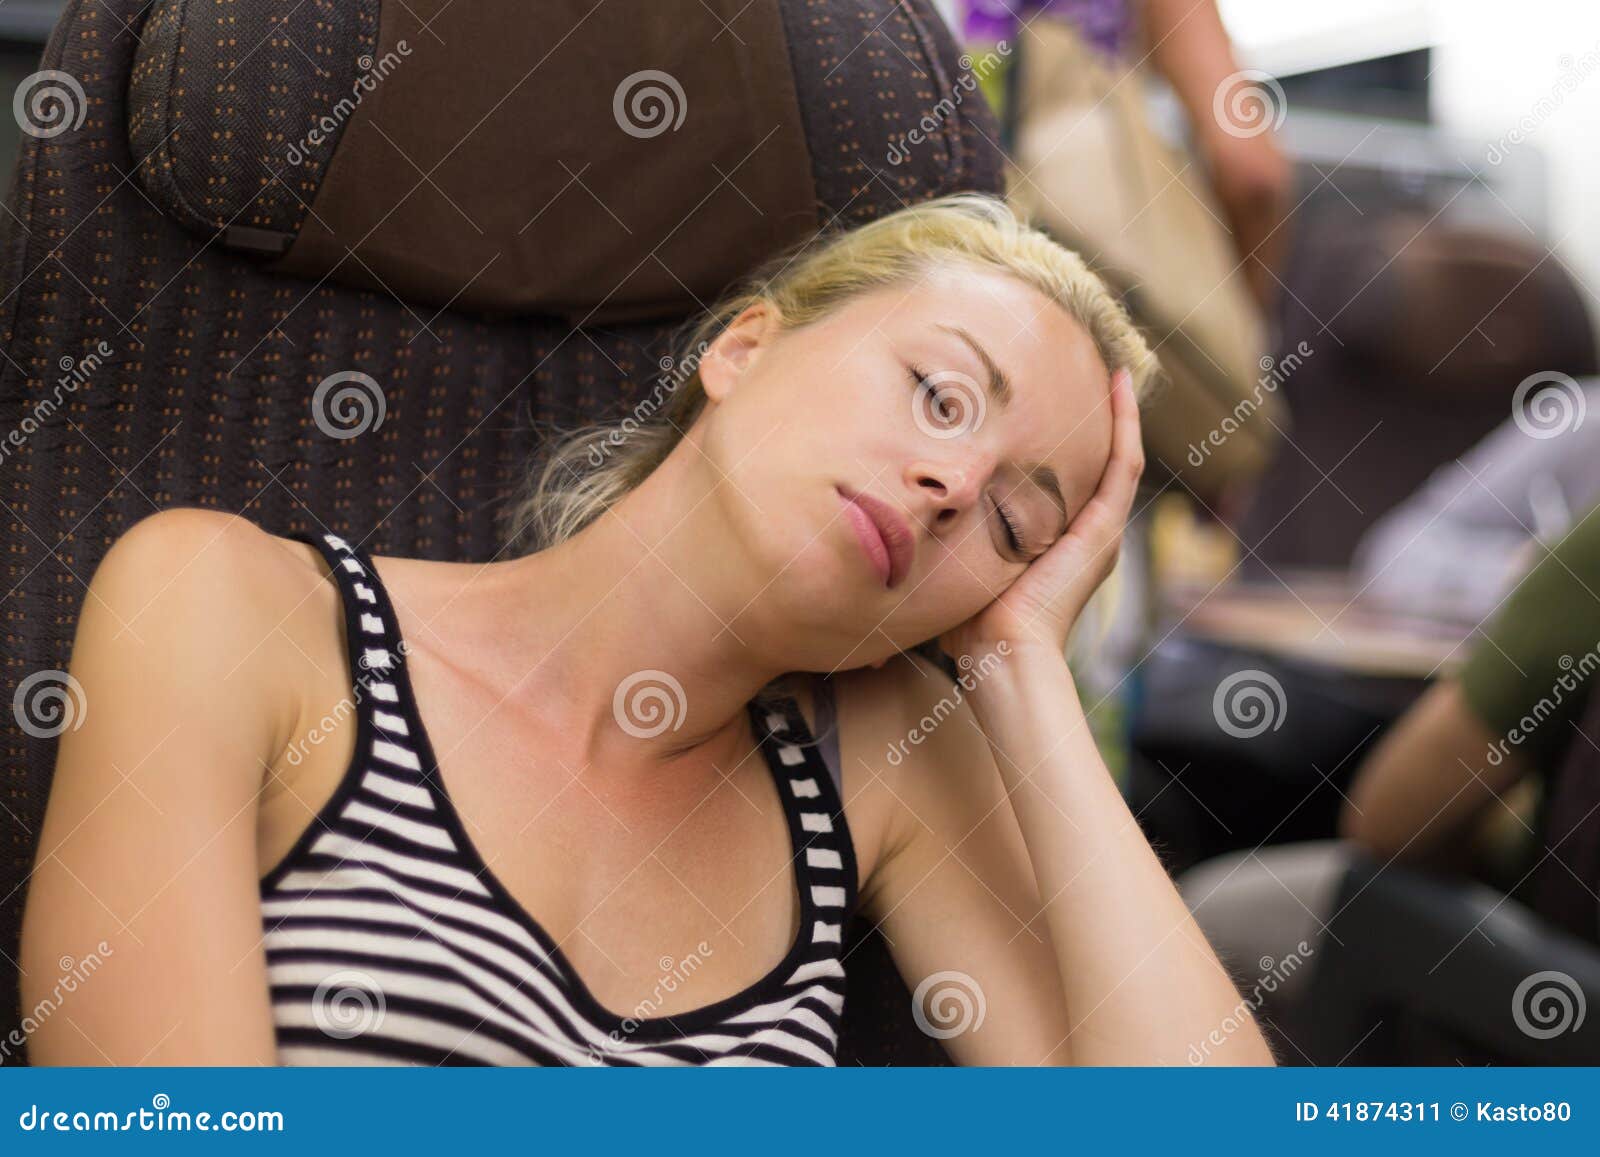 Терпящий пассажиры дремлют. Девушка дремлет в поезде. Девушка поезд блондинка. Дремлет в электричке. Женщины подремали в автобусе.